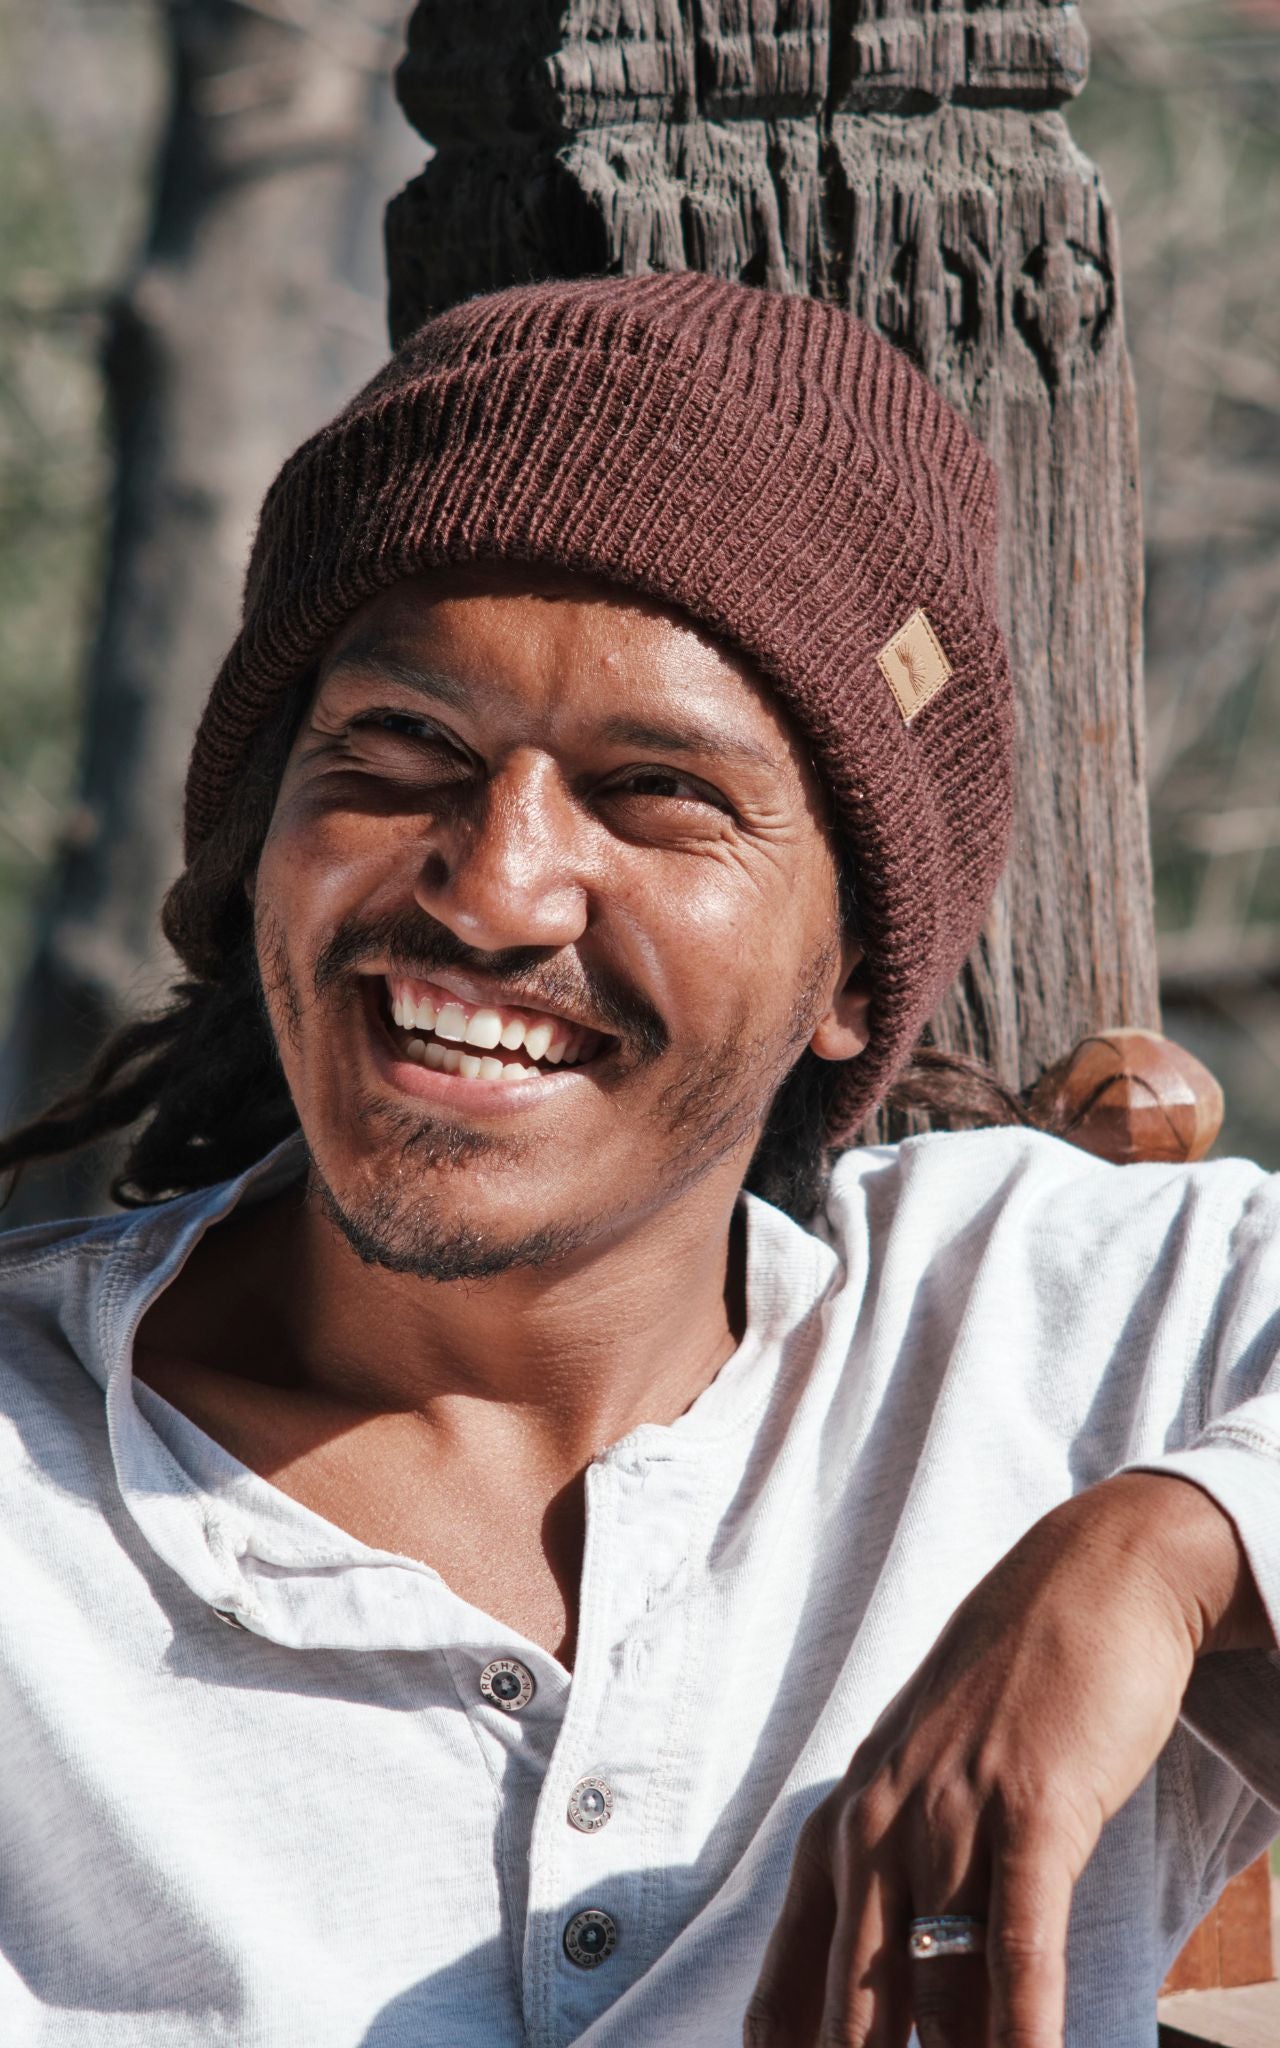 Surya Australia Merino Wool 'Fisherman' Beanie for men made in Nepal